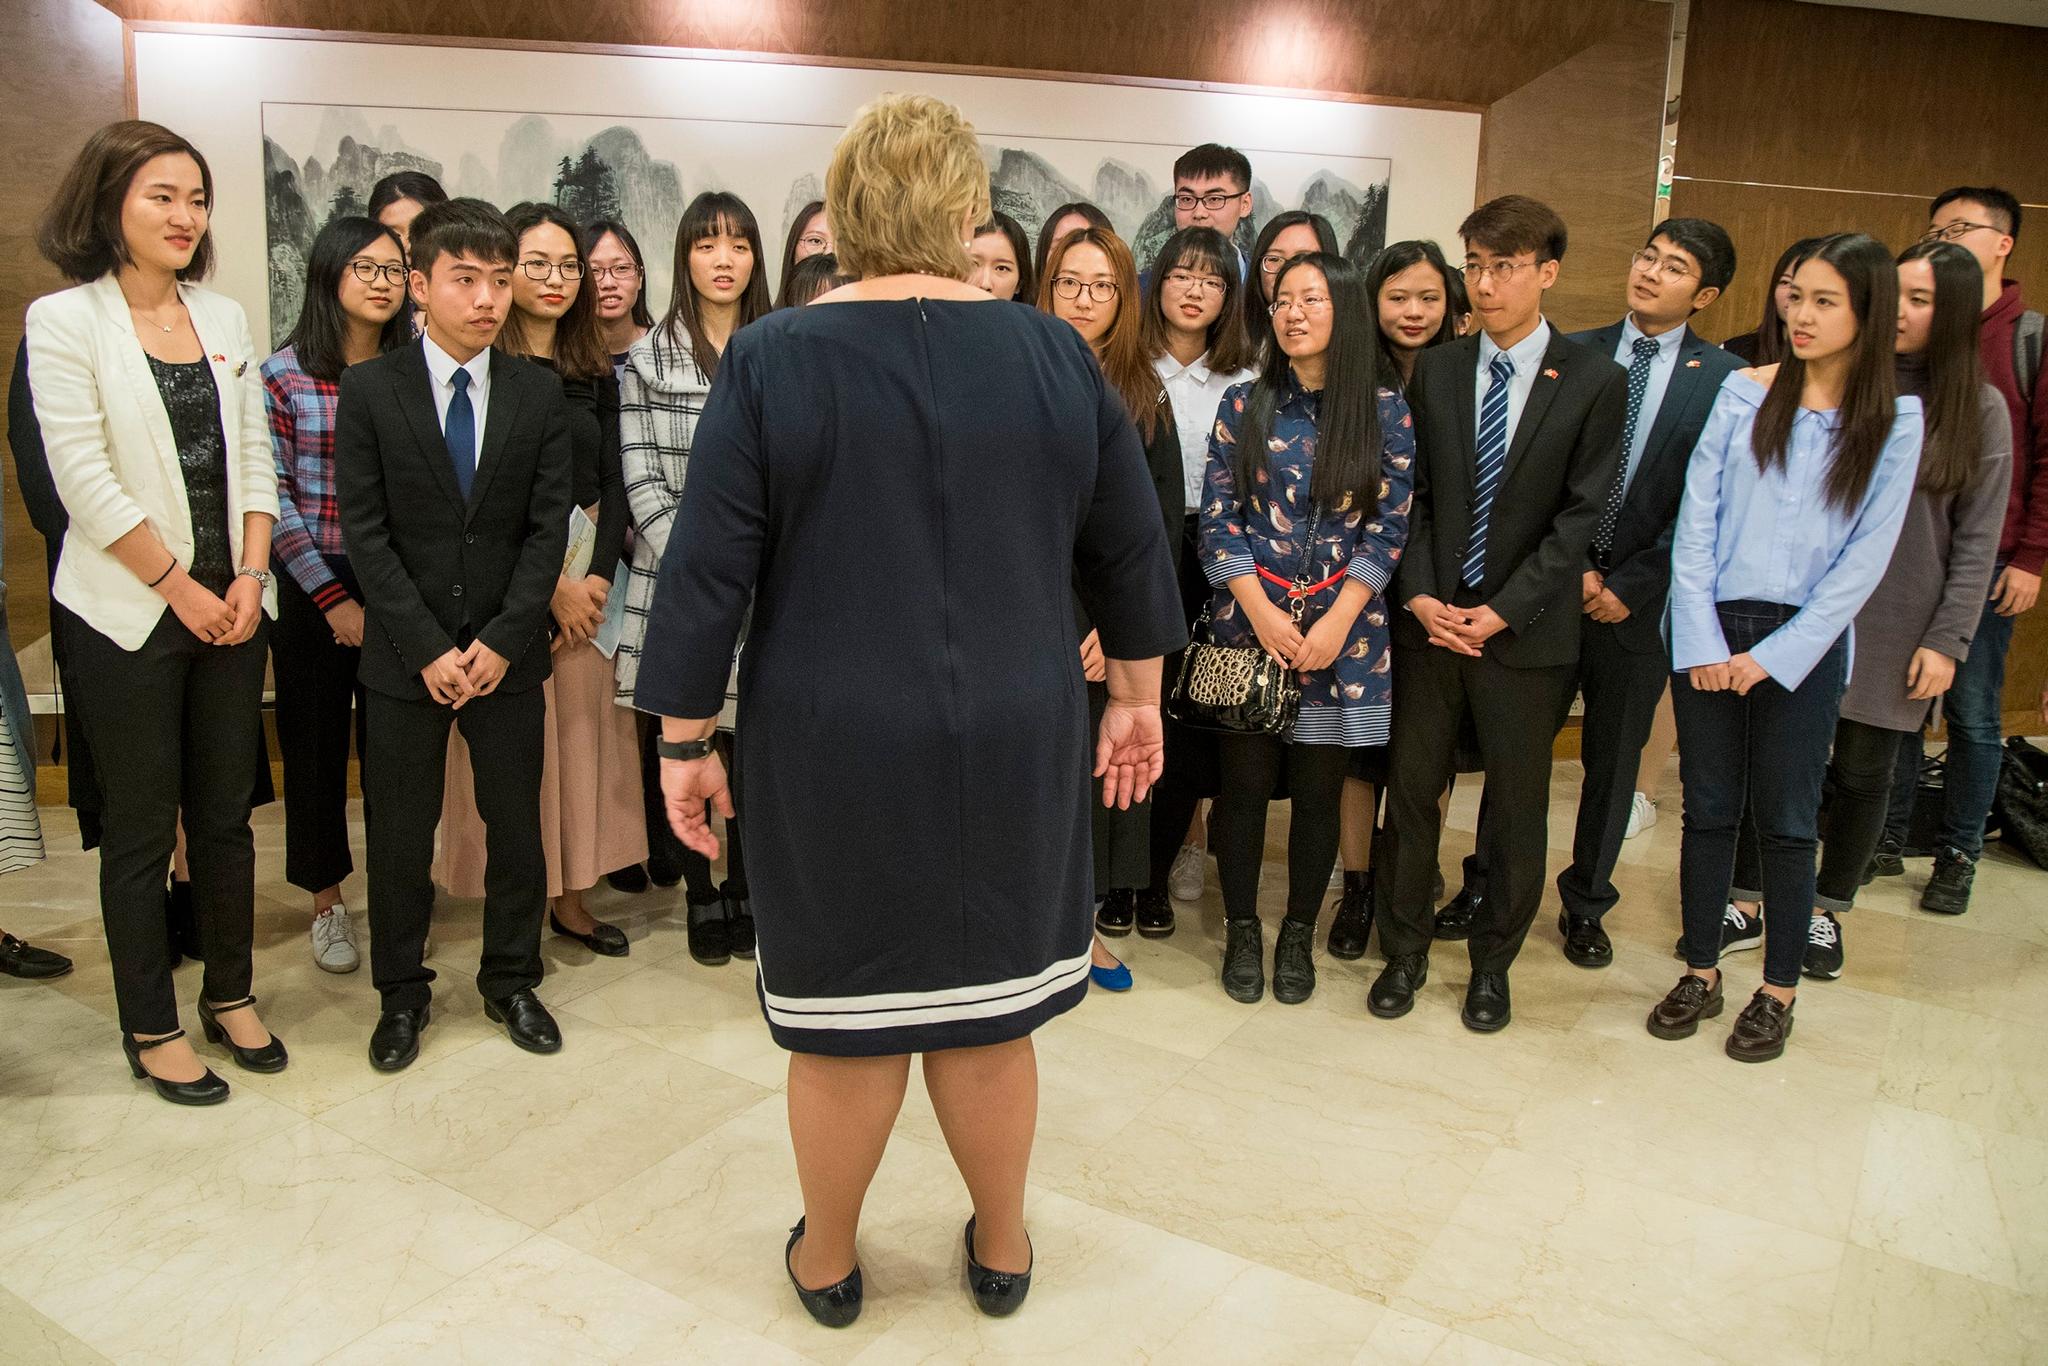 Statsminister Erna Solberg møtte mandag norsktalende kinesiske studenter på Peking-universitetet. Studentene er opptatt av norsk natur, Edvard Munch og sosiale ordninger, men engasjementet er størst rundt festing, kjærester og norsk ungdomskultur i TV-serien Skam.